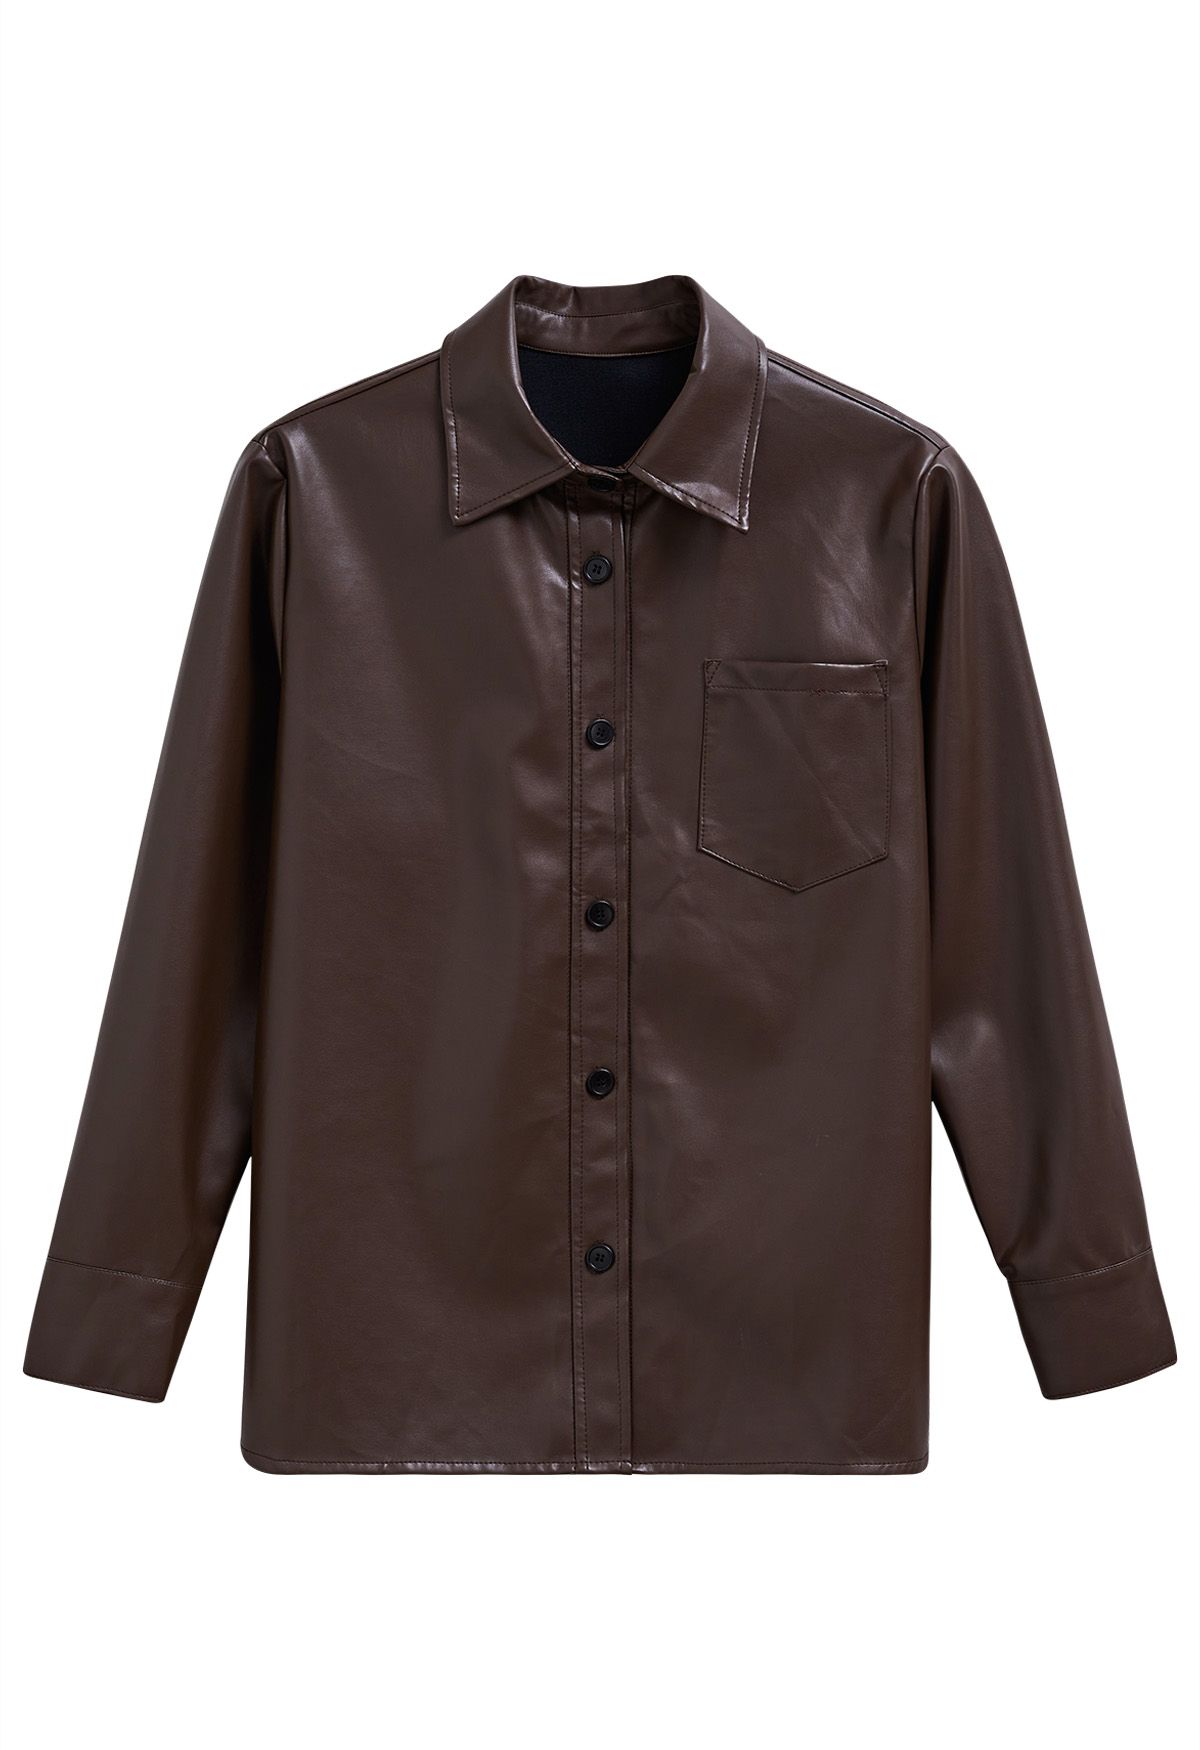 Chaqueta estilo camisa informal elegante de piel sintética en marrón